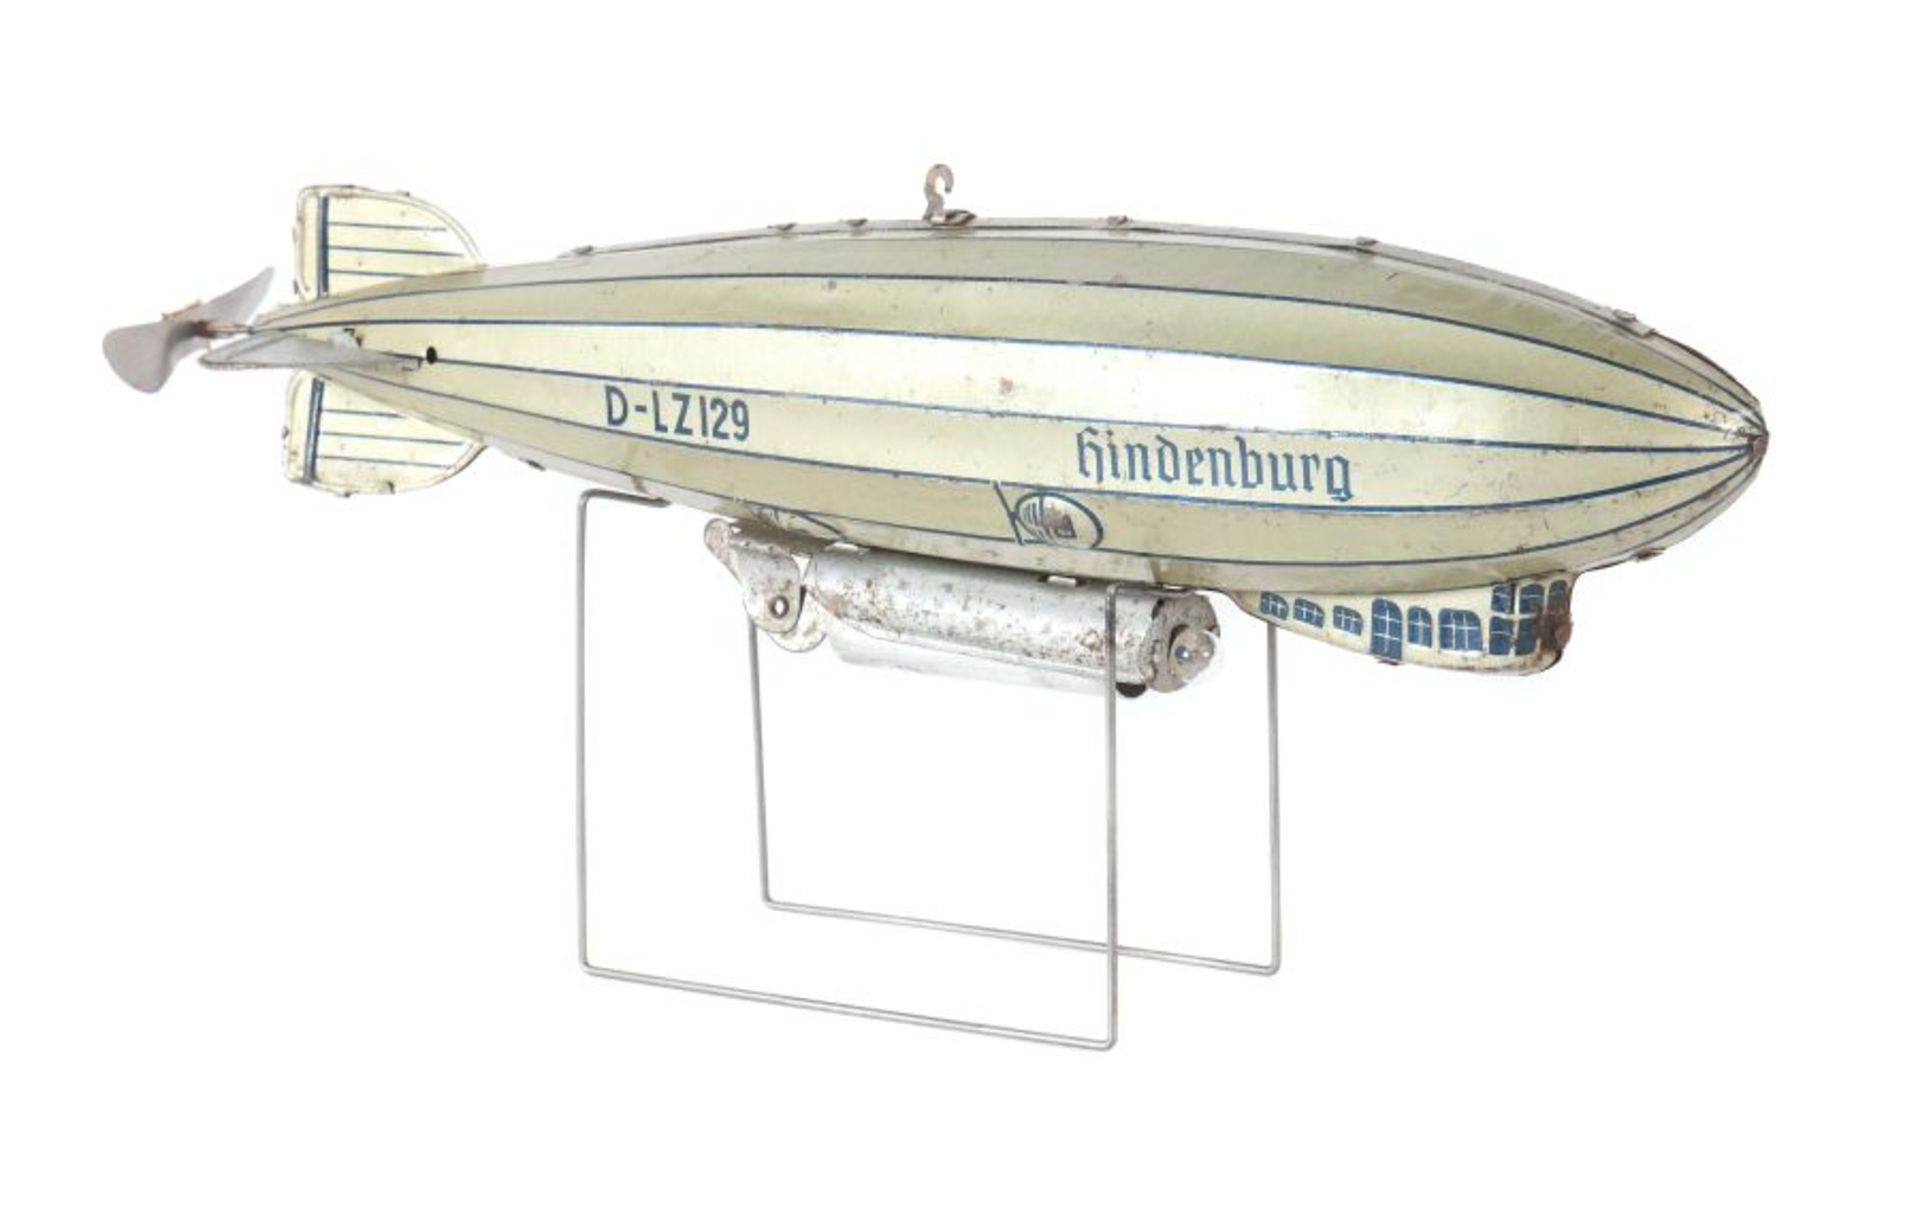 Zeppelin Tipp & Co, ca. 1935, Blech, Uhrwerkantrieb, bez.: "D-LZ129 Hindenburg", Gondel und